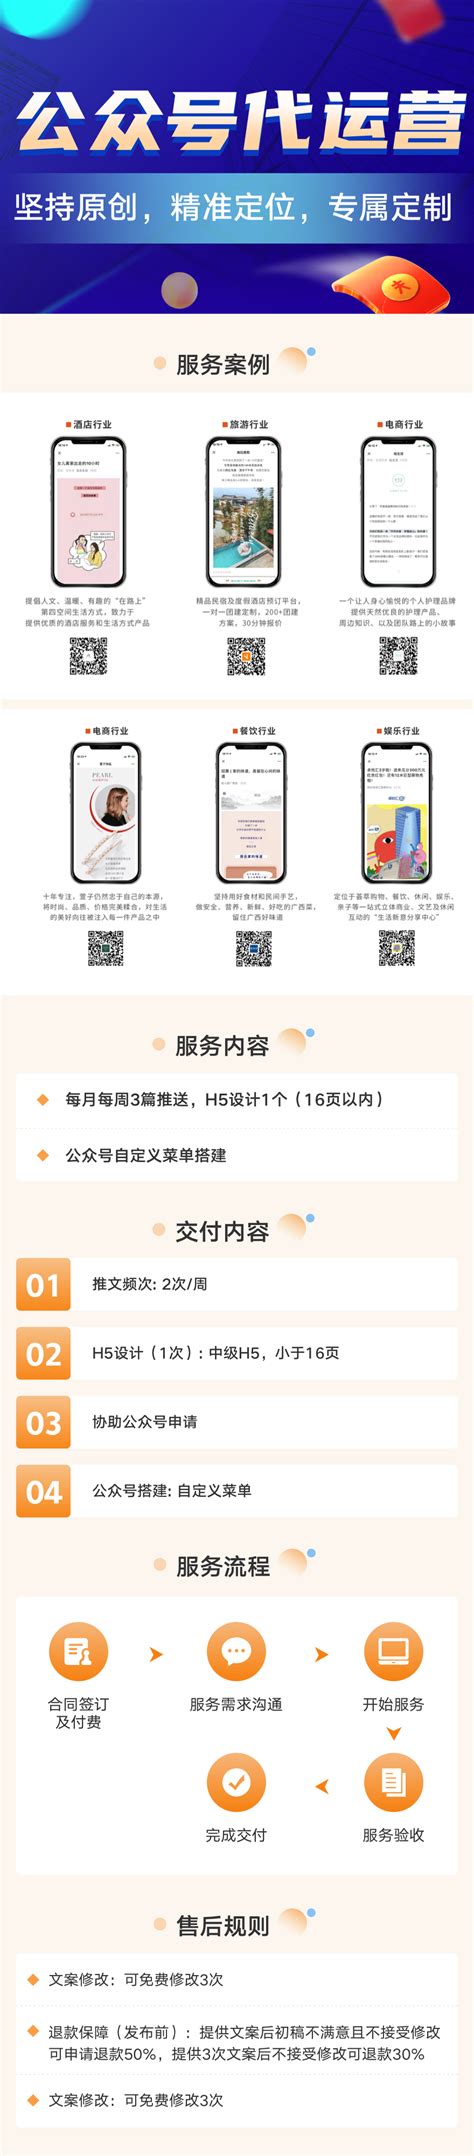 武汉电商代运营公司-258jituan.com企业服务平台